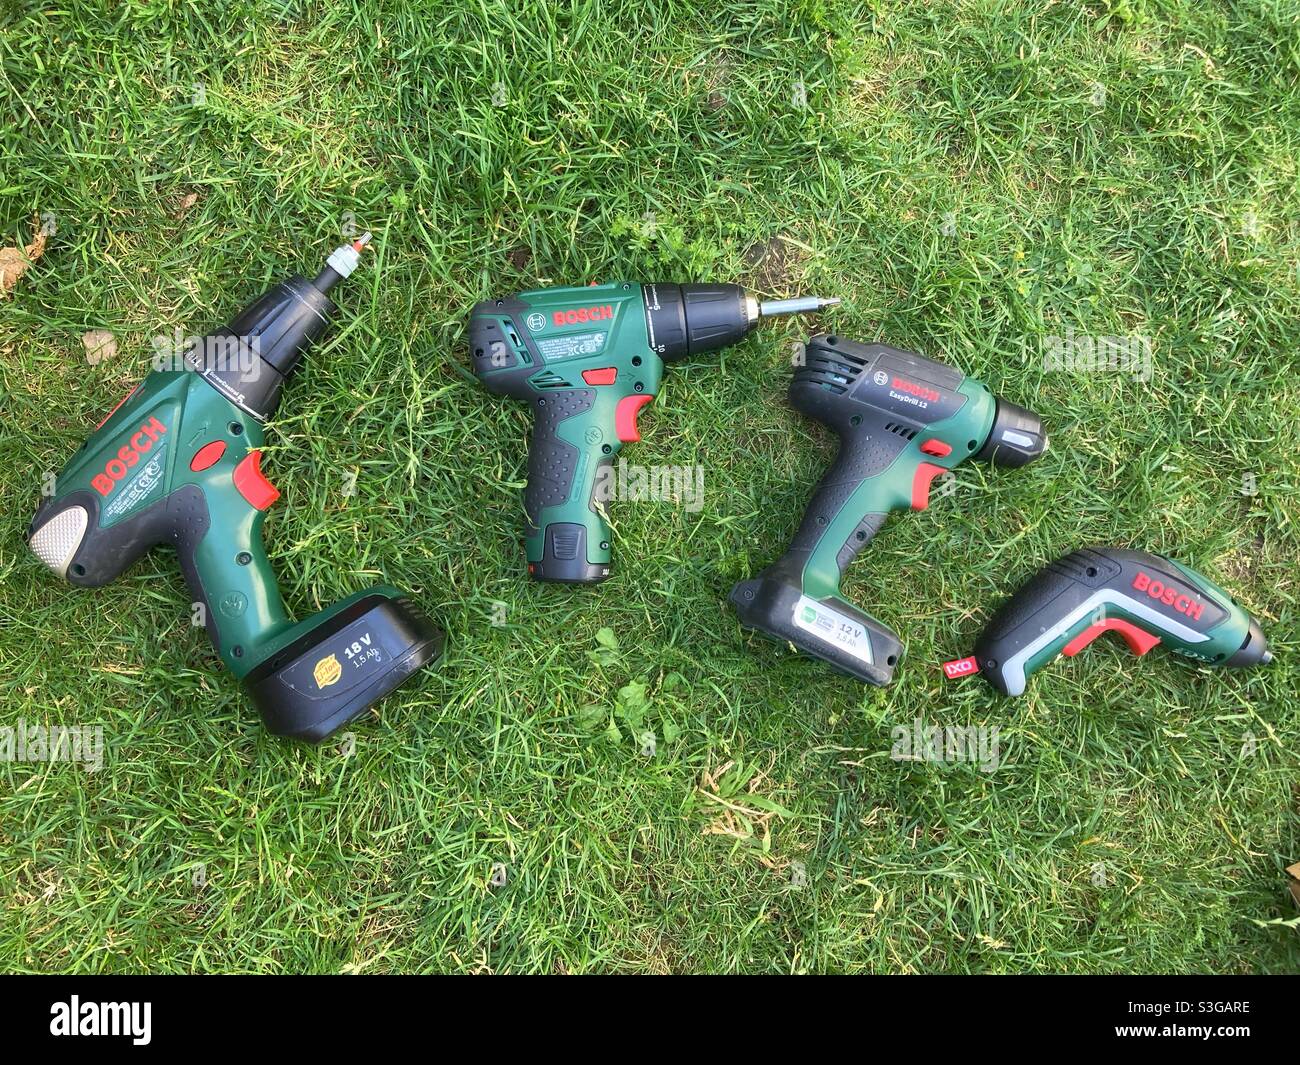 Cuatro taladros eléctricos Bosch y destornilladores de diferentes tamaños en la hierba Foto de stock